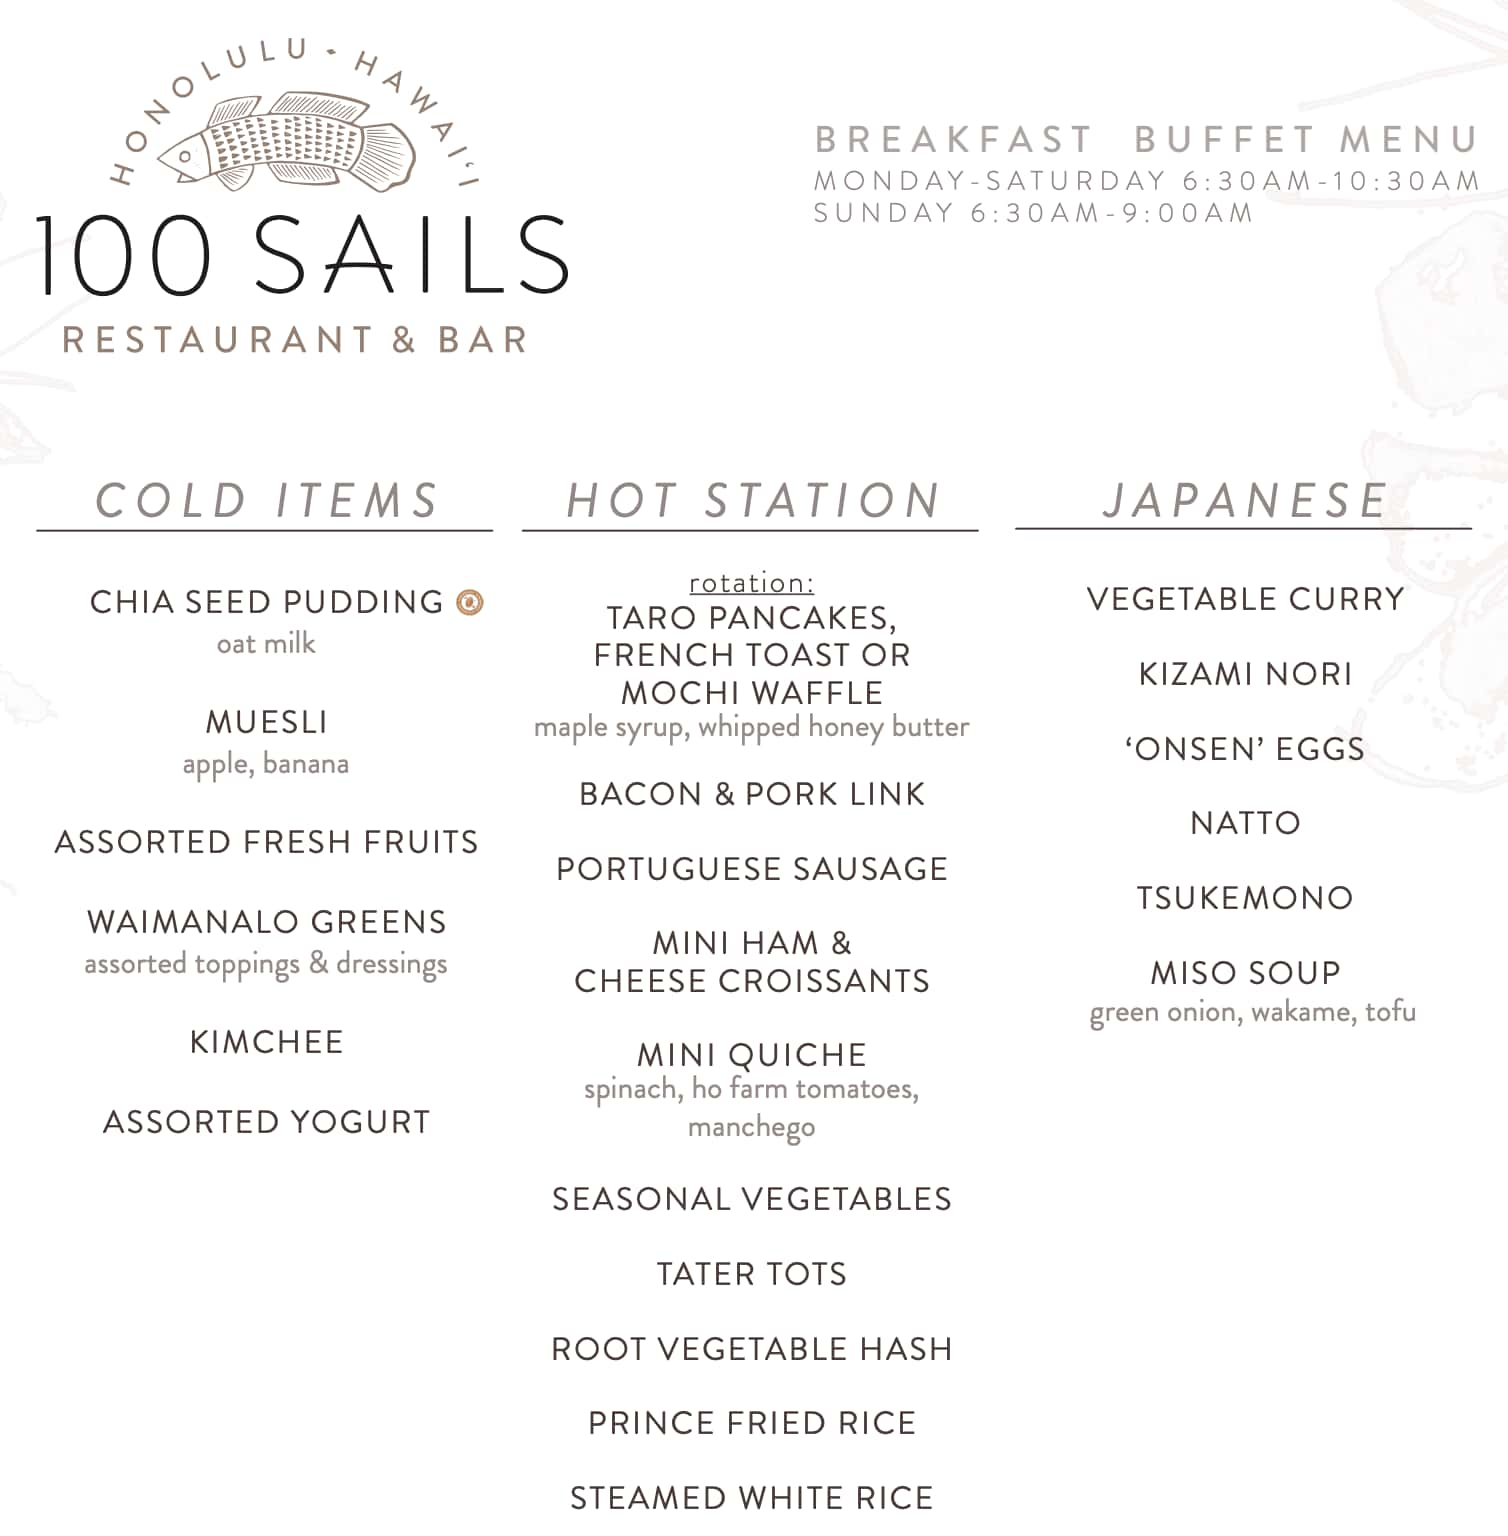 100 Sails Restaurant & Bar Breakfast Buffet Menu